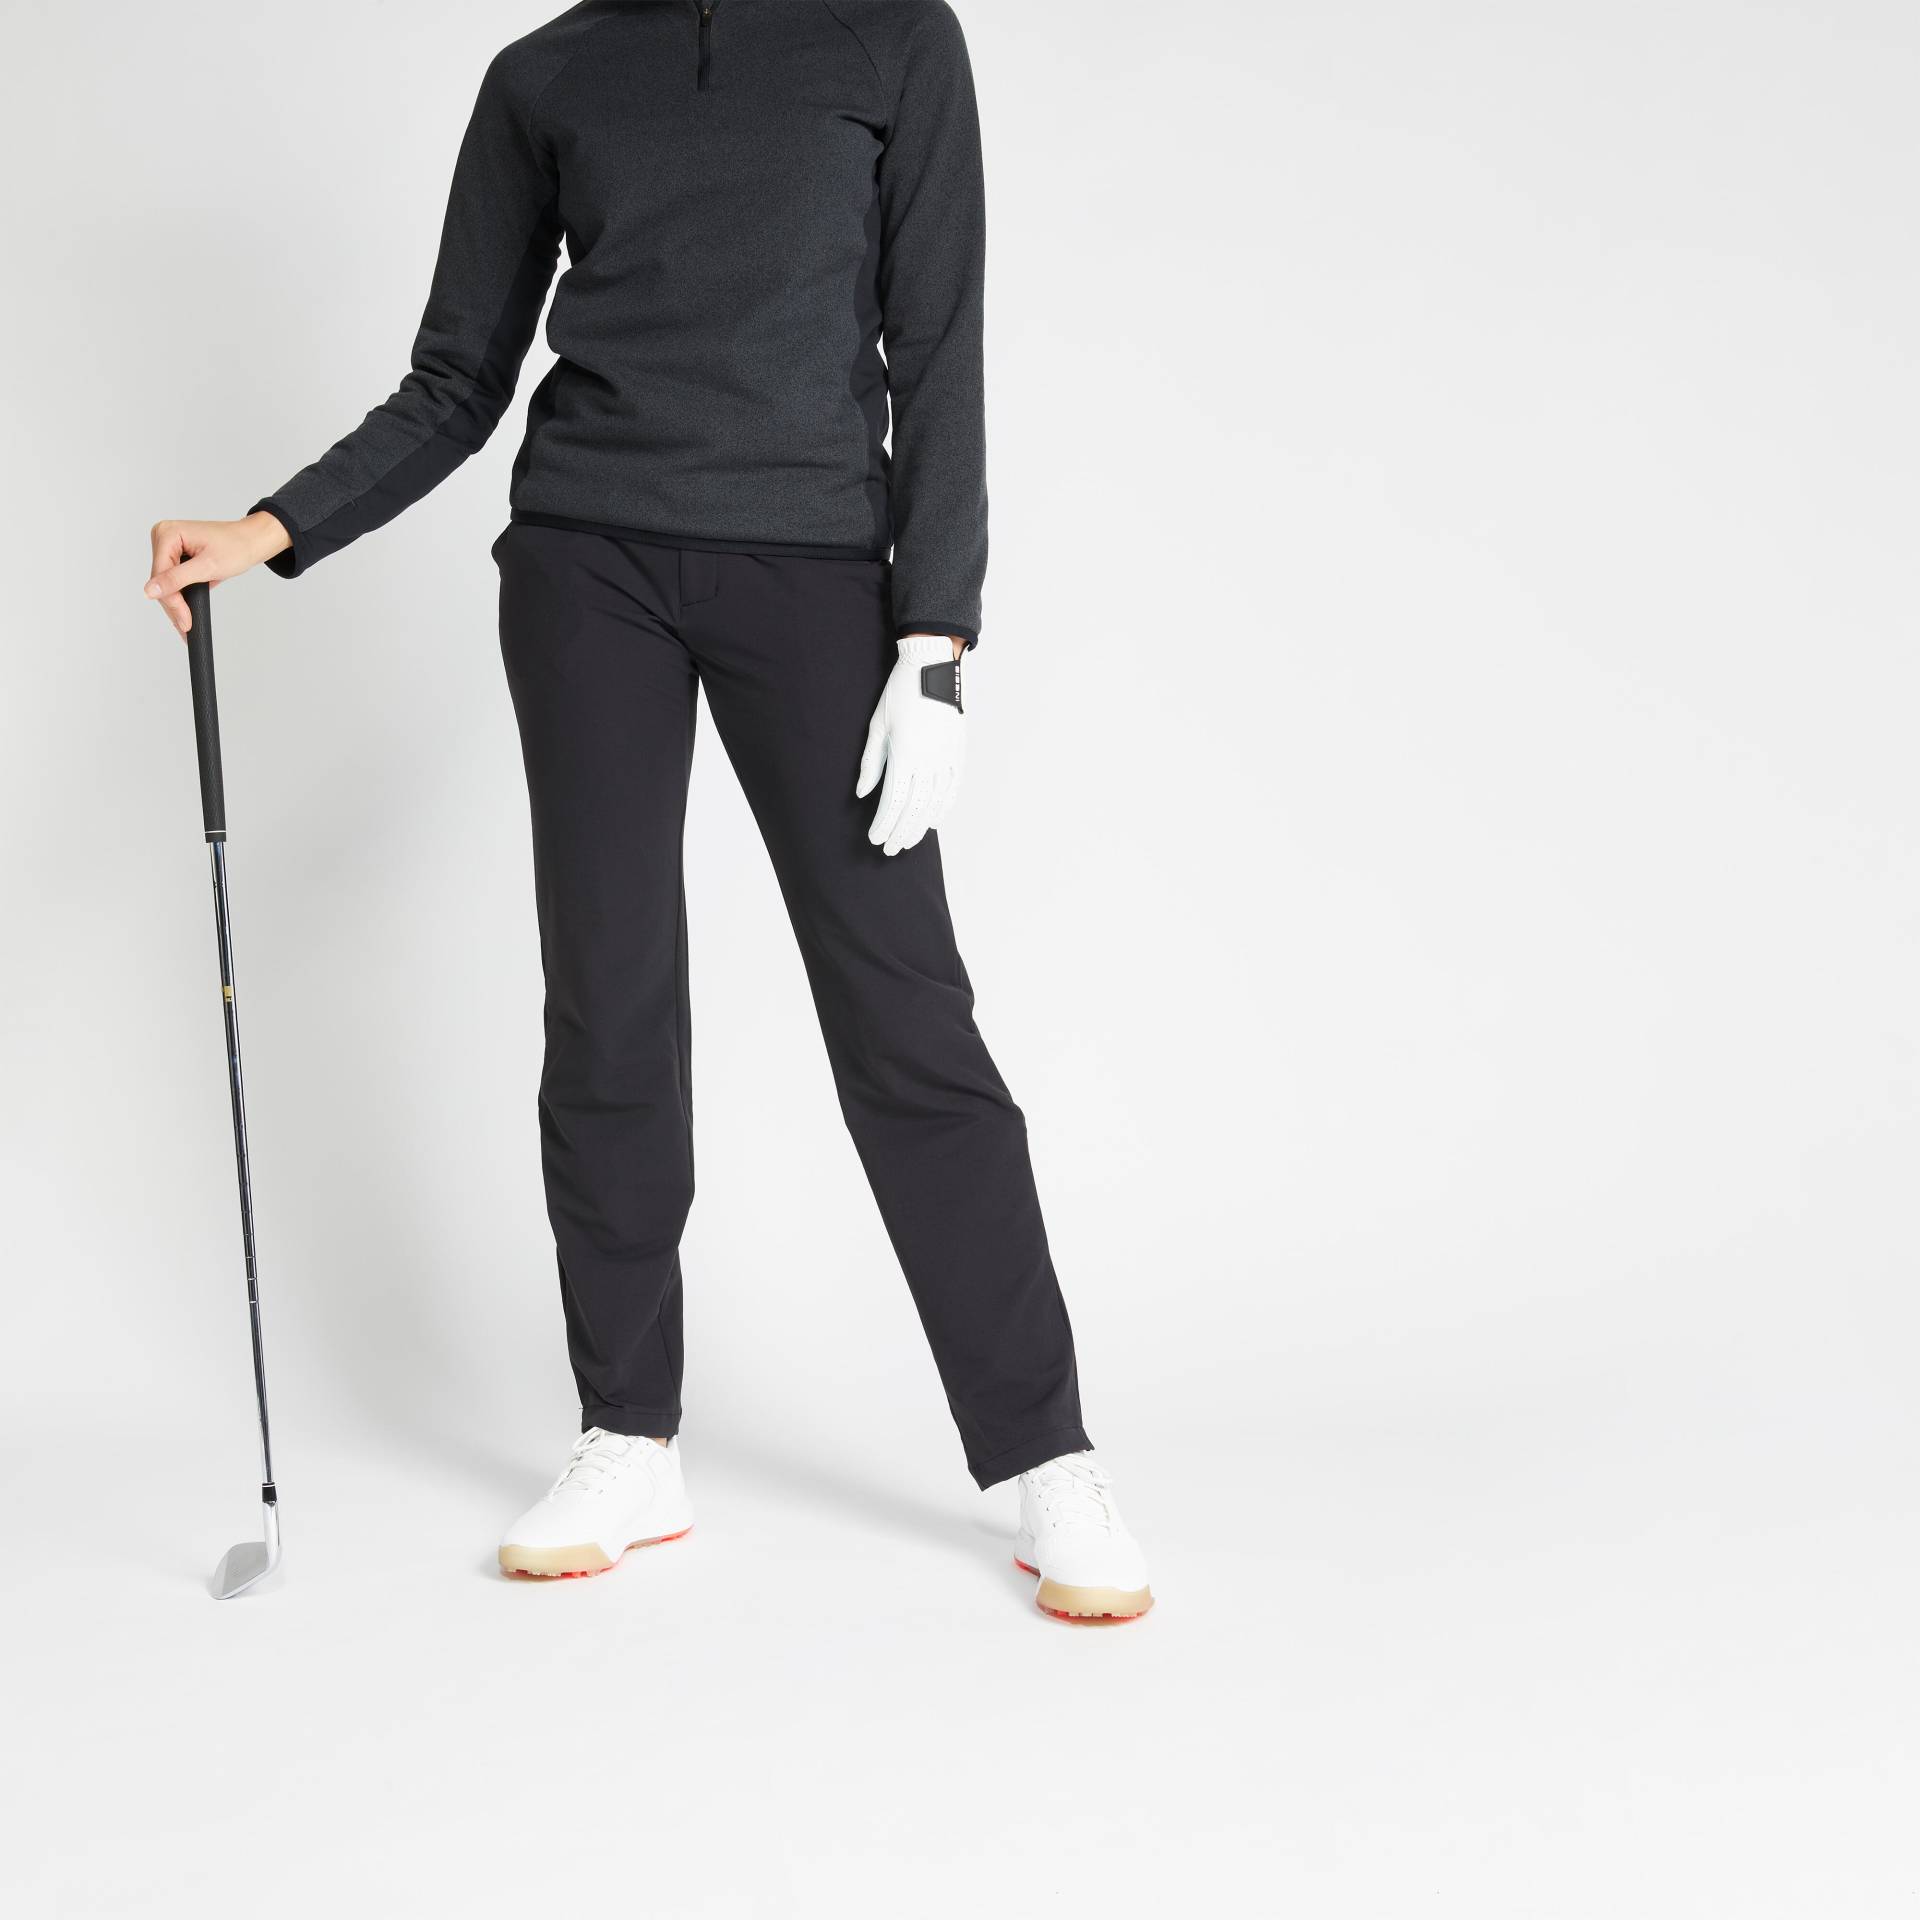 Damen Golfhose warm - CW500 schwarz von INESIS